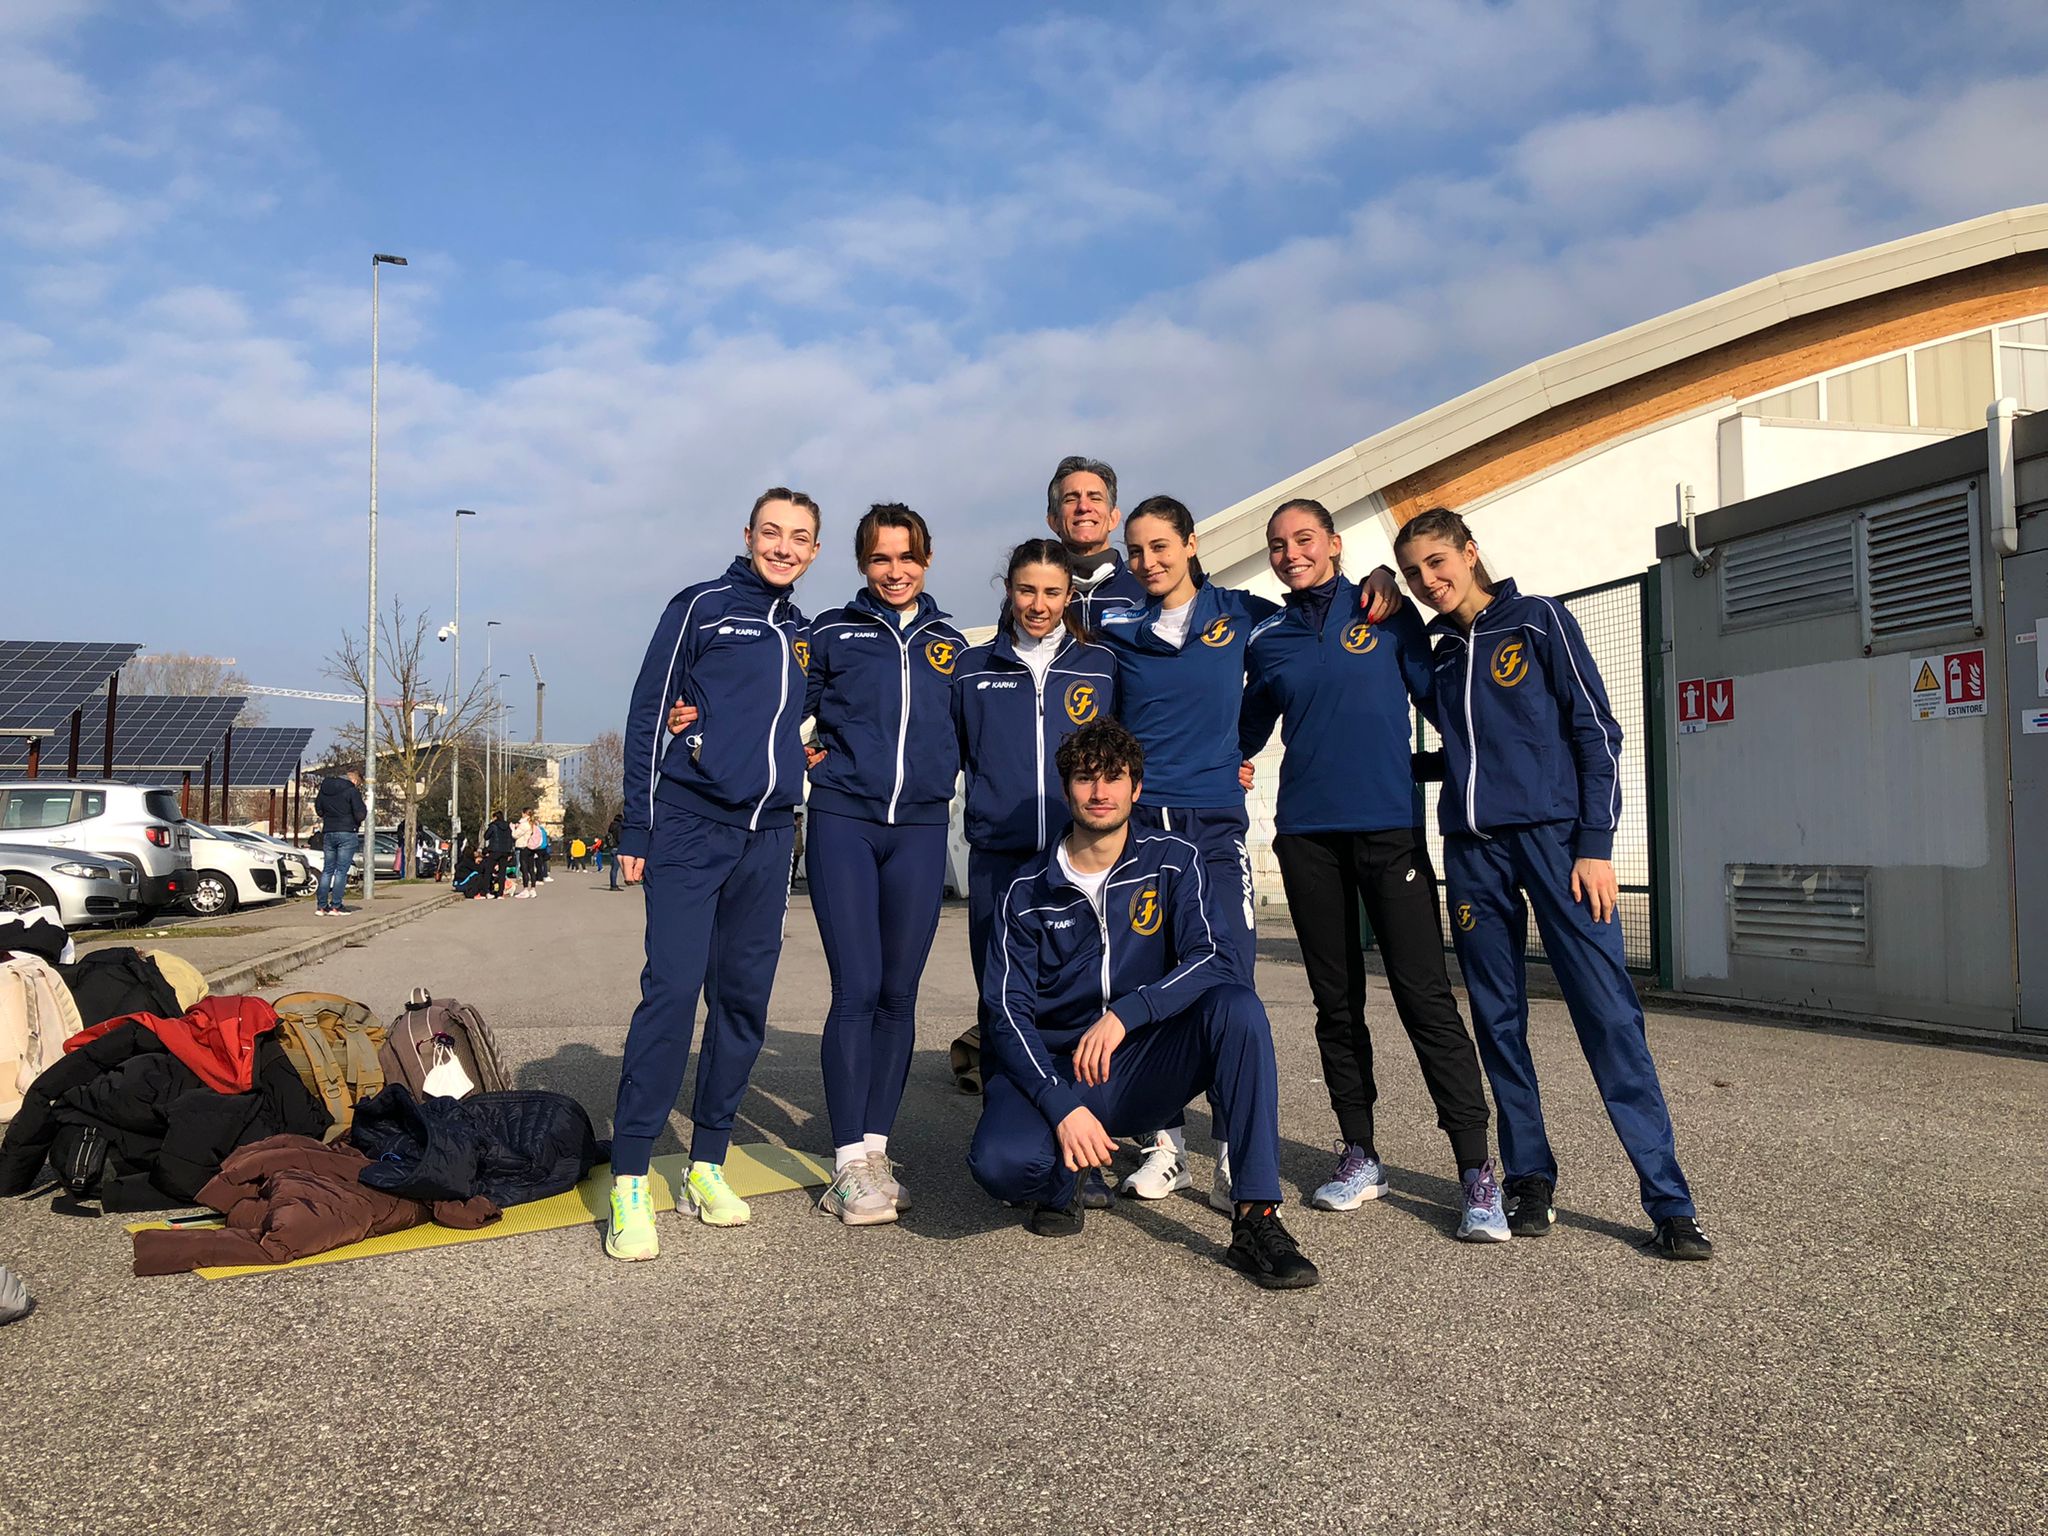  Indoor, Zlatan riparte forte ad Ancona. Cinque titoli regionali a Parma